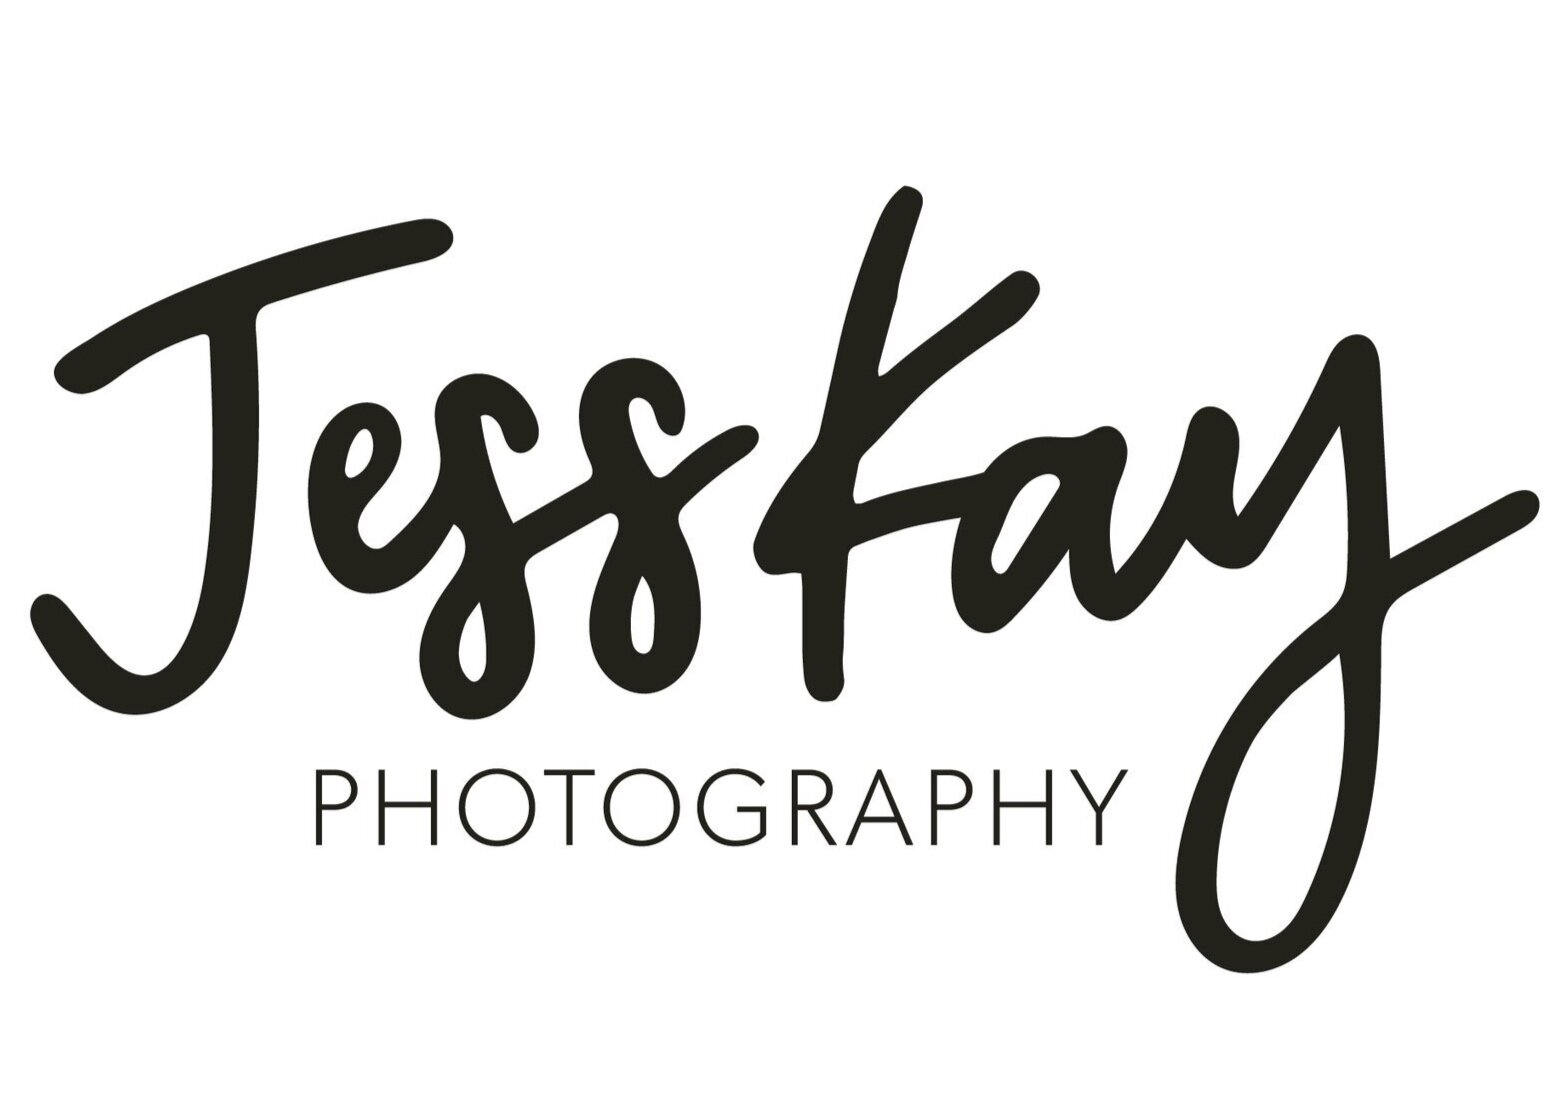 JESSKAY PHOTOGRAPHY